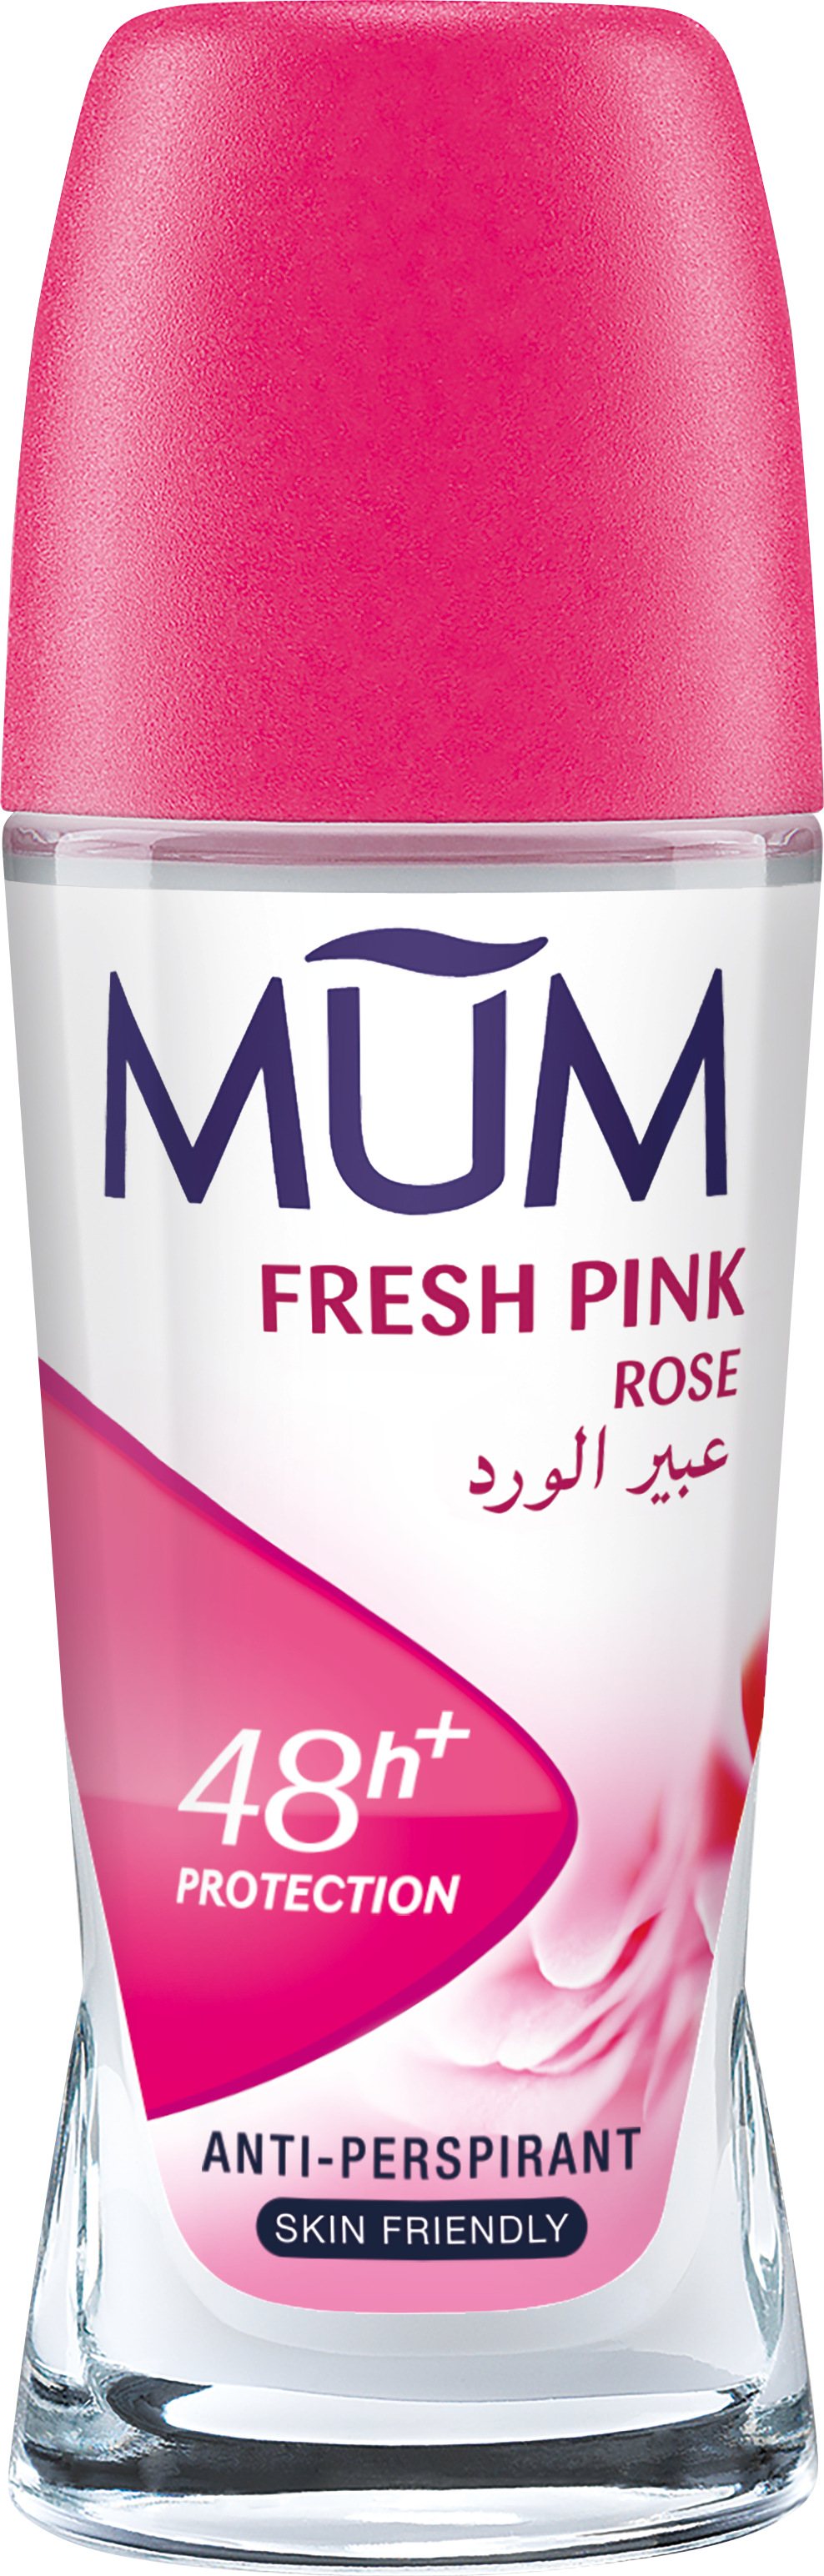 Fresh Pink Rose